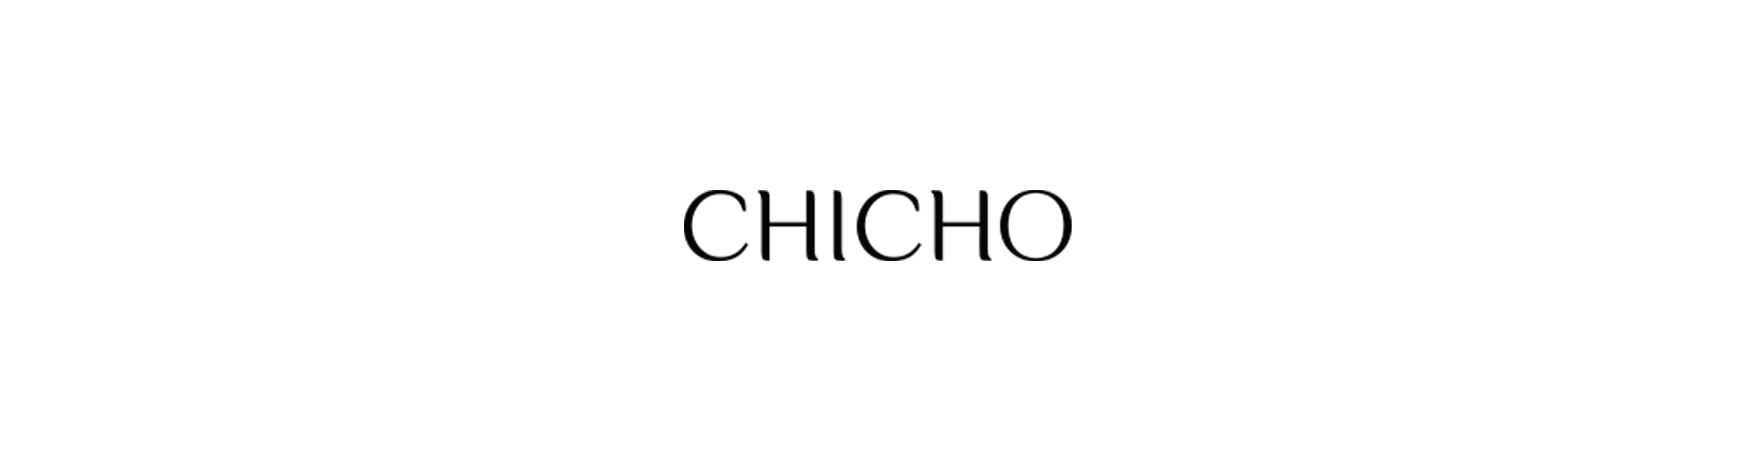 CHICHO